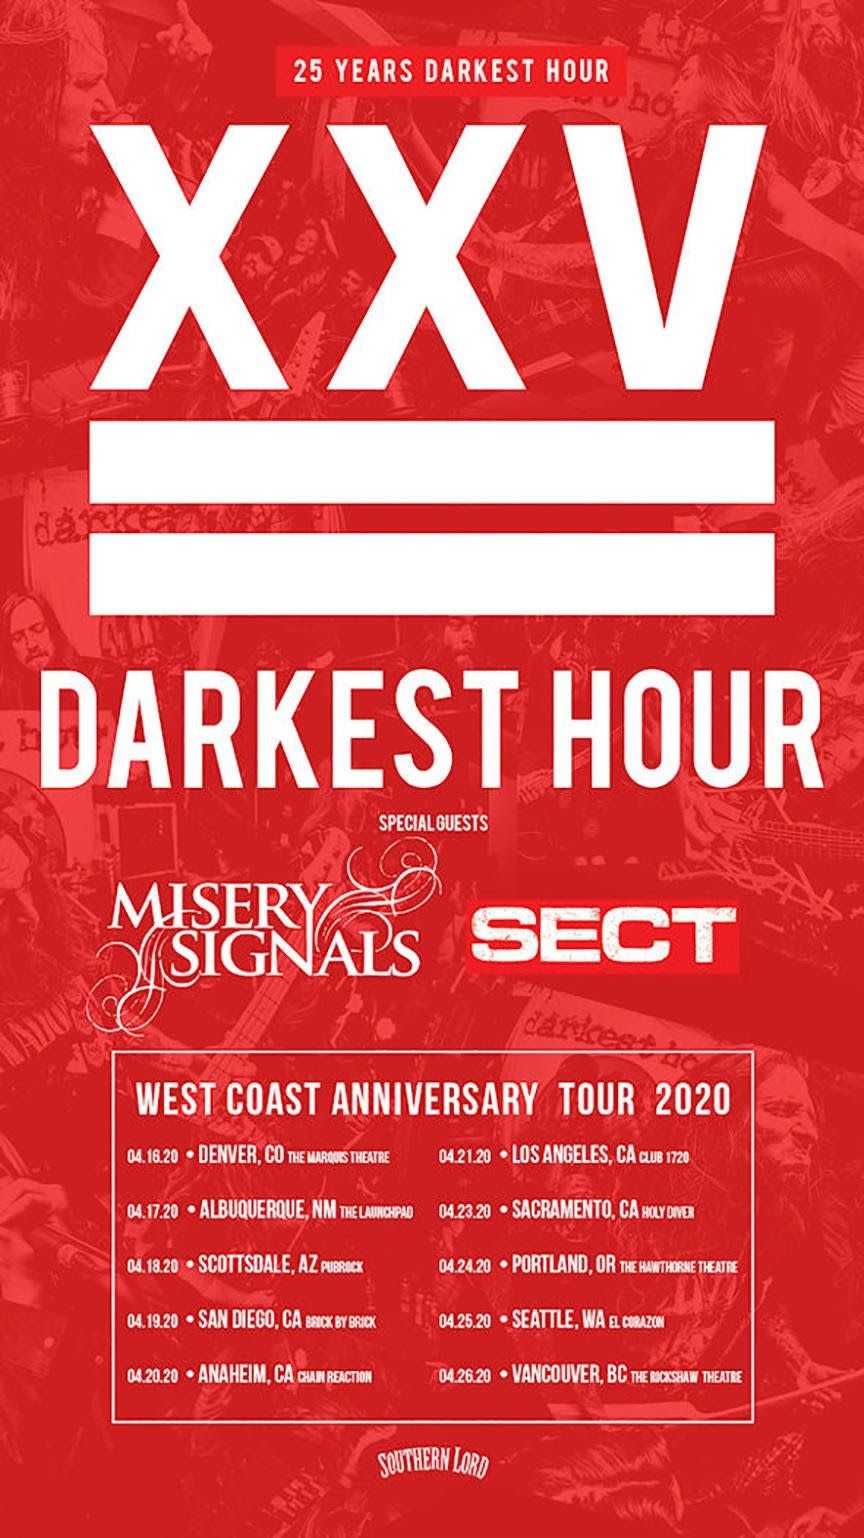 Darkest Hour 25th anniversary tour